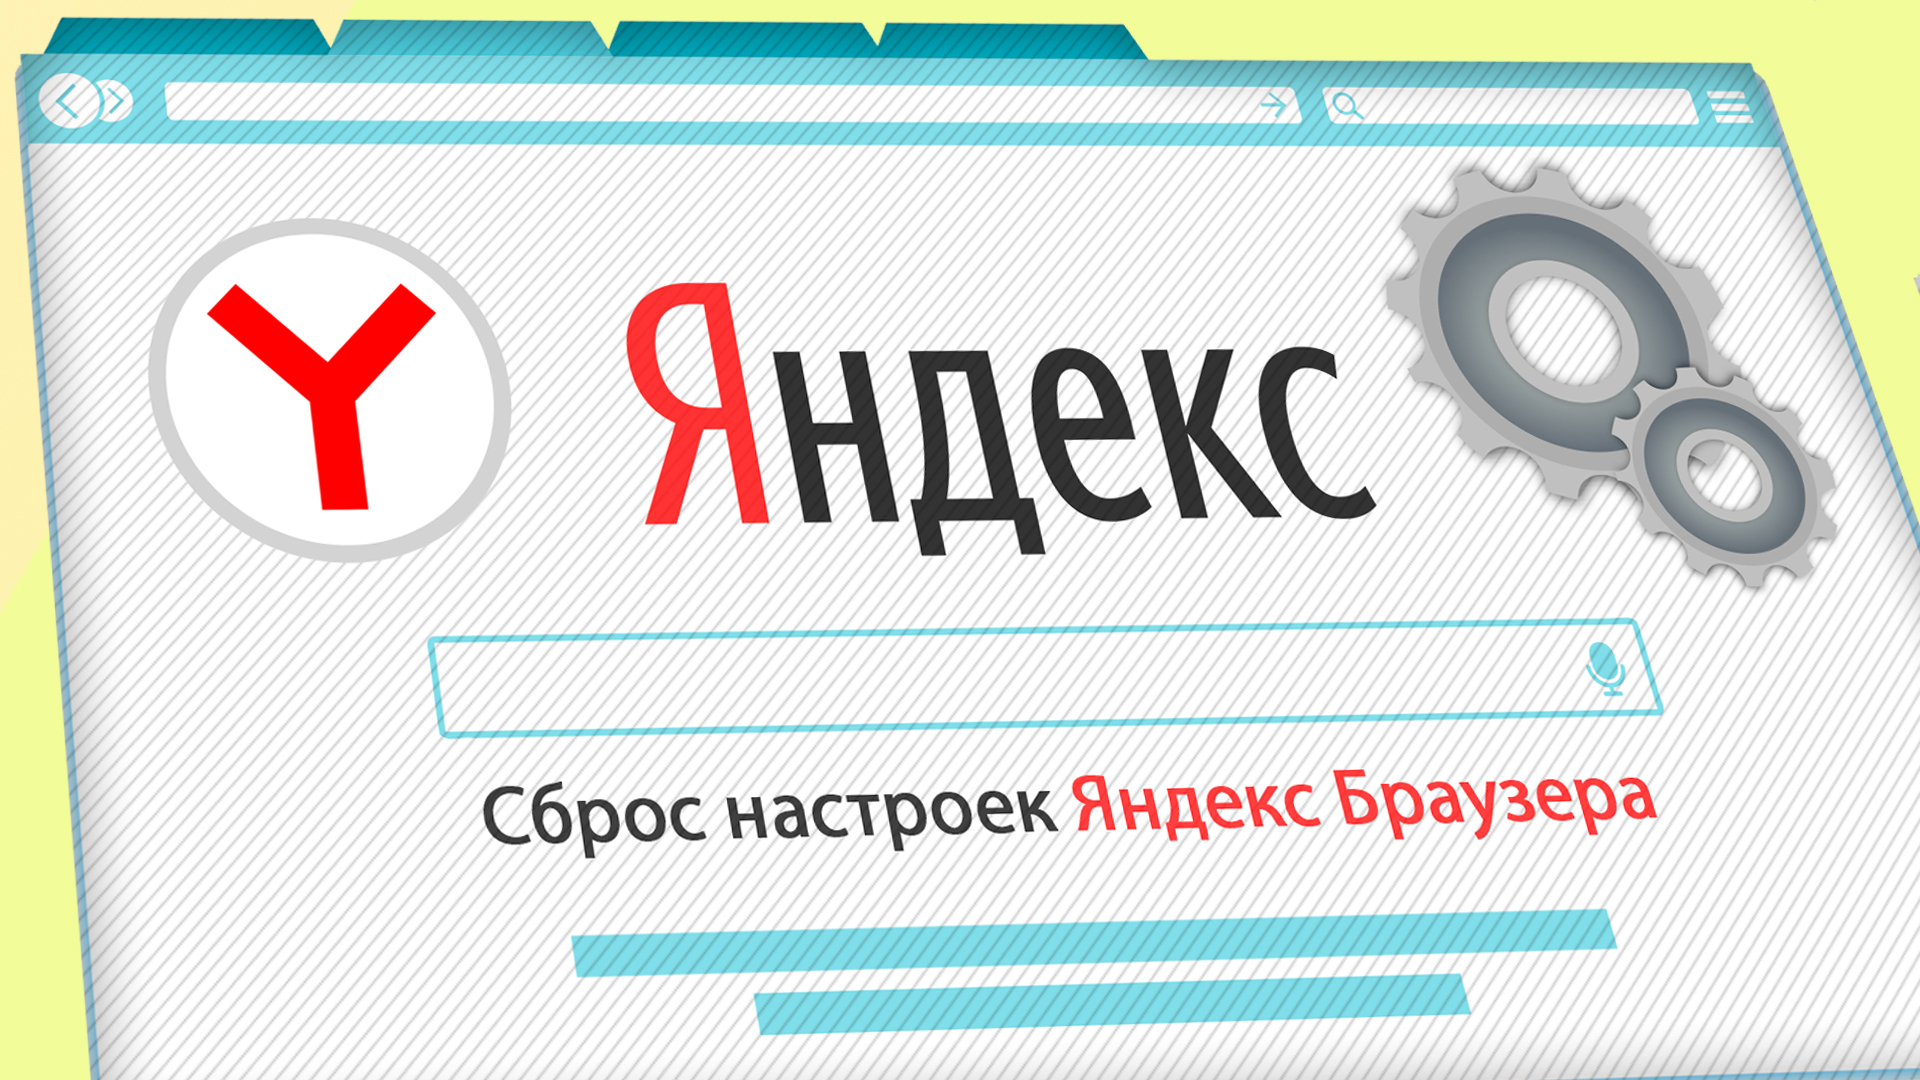 Иллюстрация на тему статьи о том, как сбросить настройки Яндекс Браузера: окно браузера на светлом фоне, иконка Yandex и шестеренки